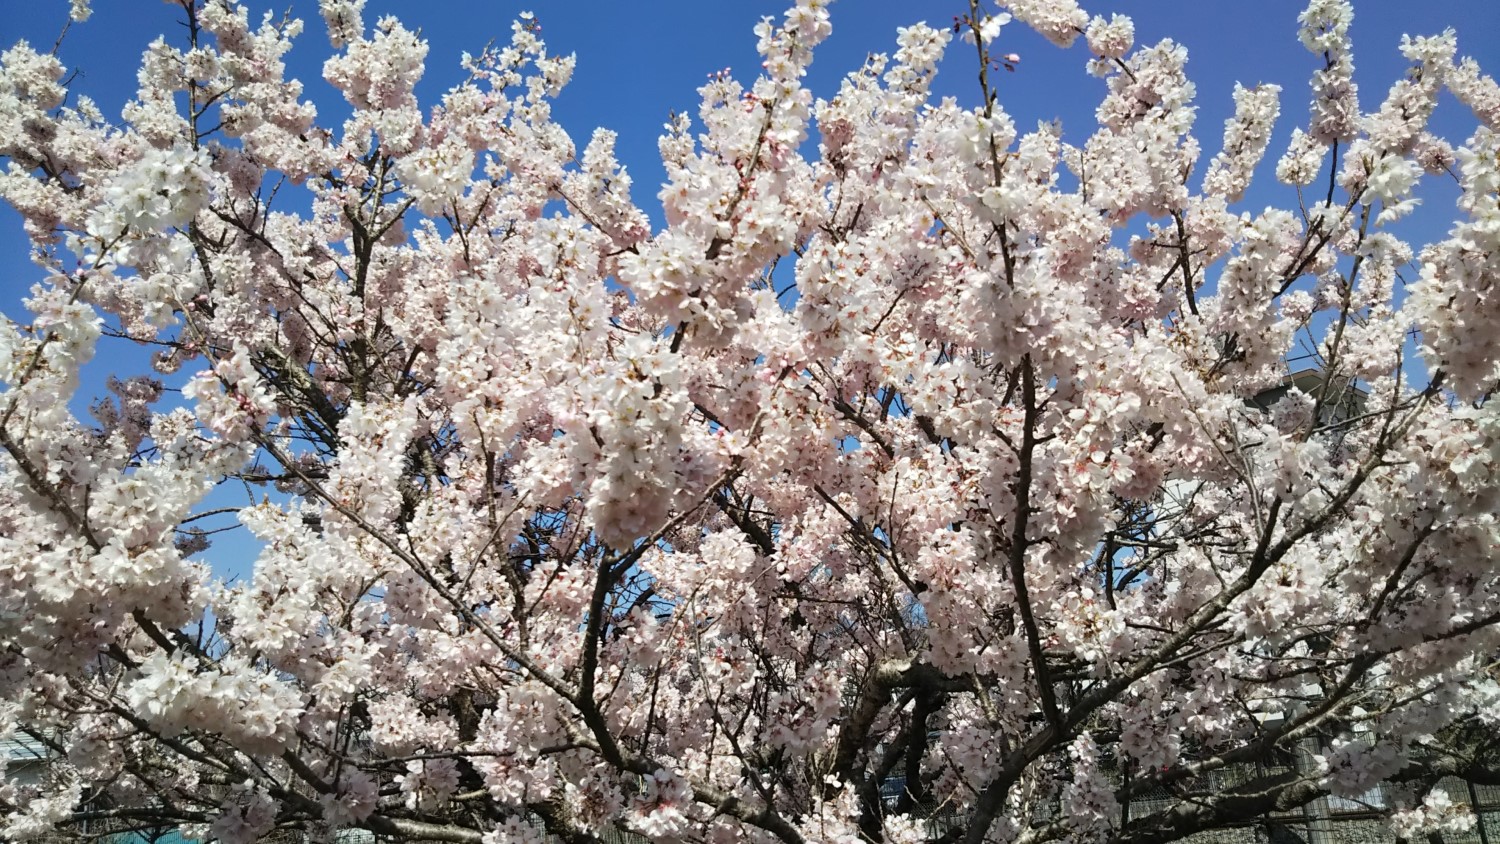 Harumeki cherry blossoms